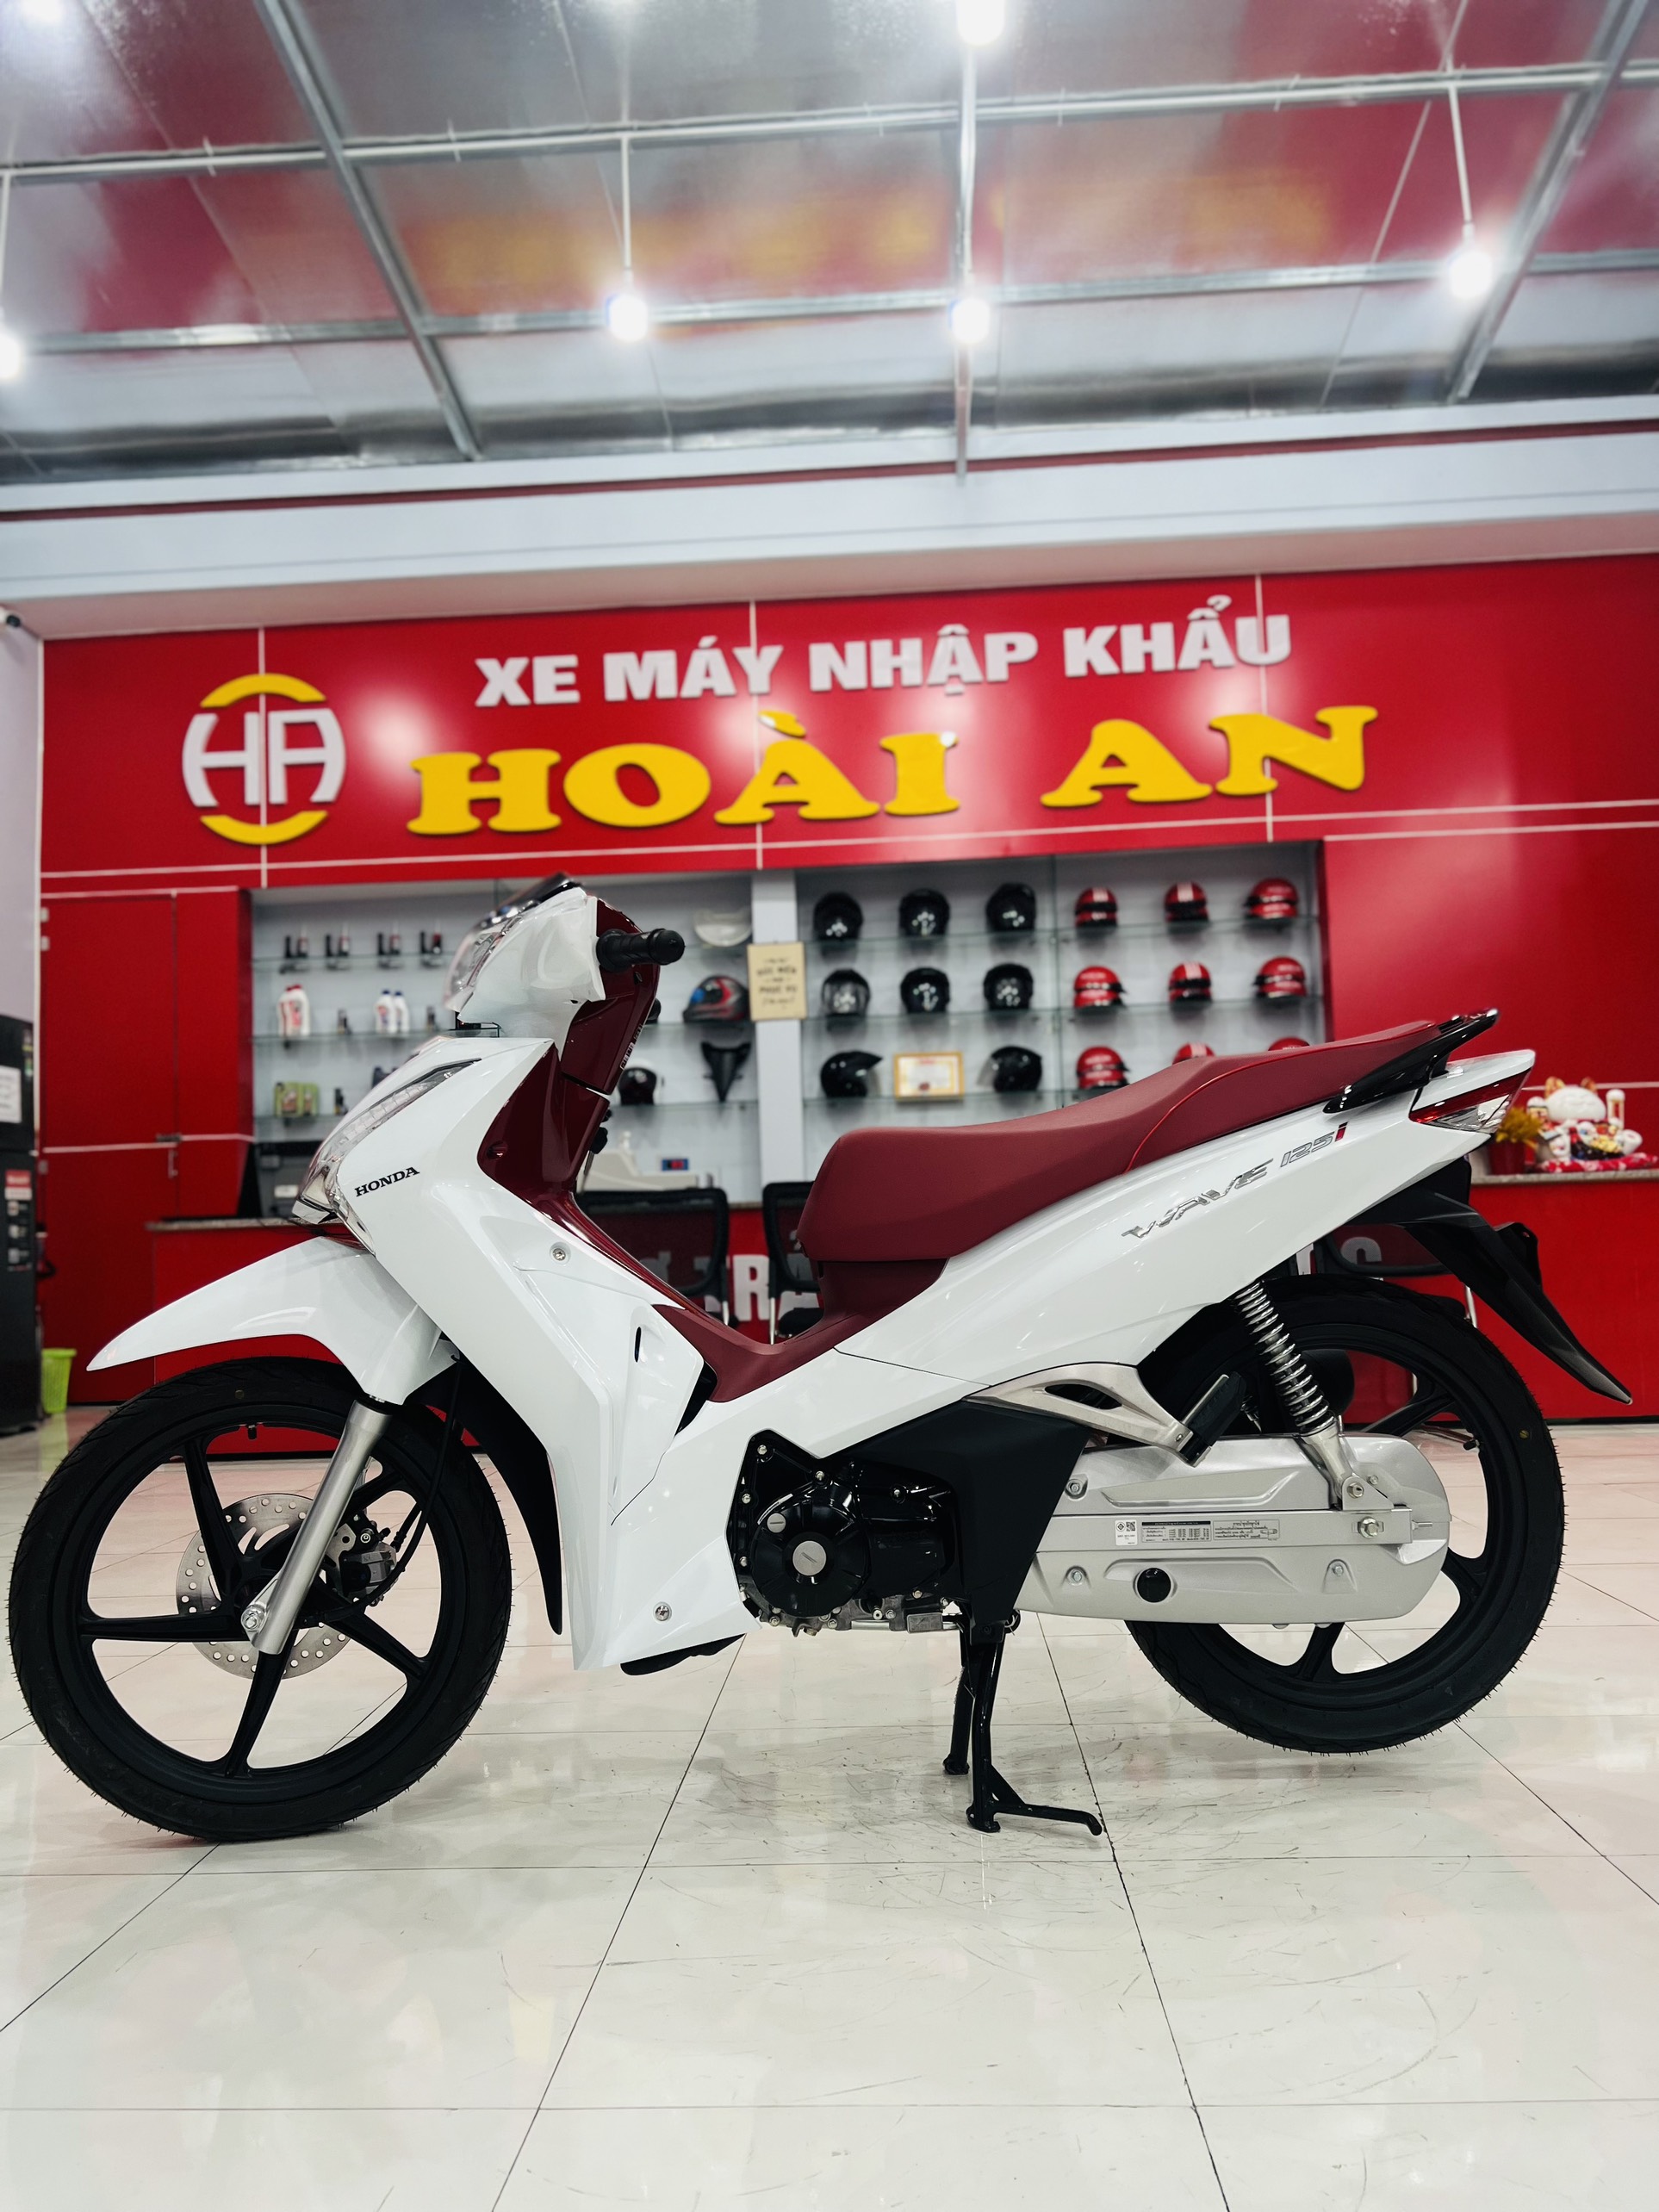 Honda Forza 300 nhập Thái đầu tiên về Việt Nam giá khoảng 130 triệu đồng